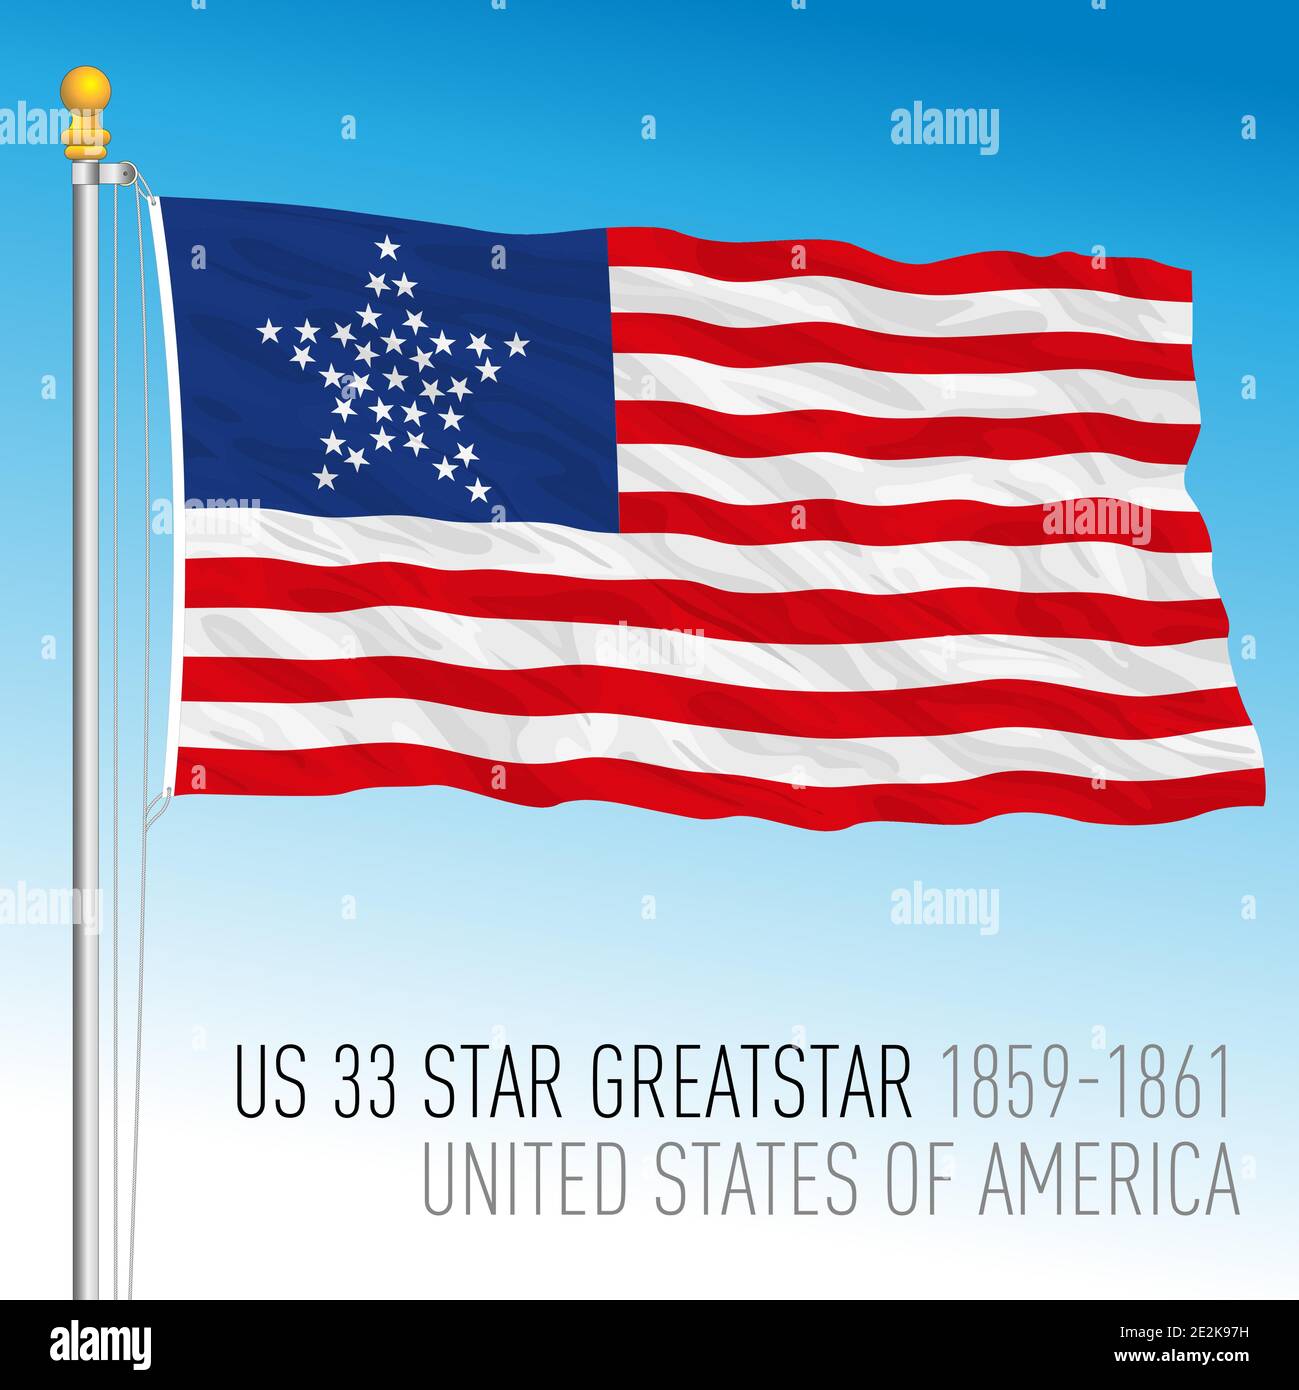 Estados Unidos de América bandera histórica, 1859 - 1861, EE.UU. 33 gran estrella, vector ilustración Ilustración del Vector